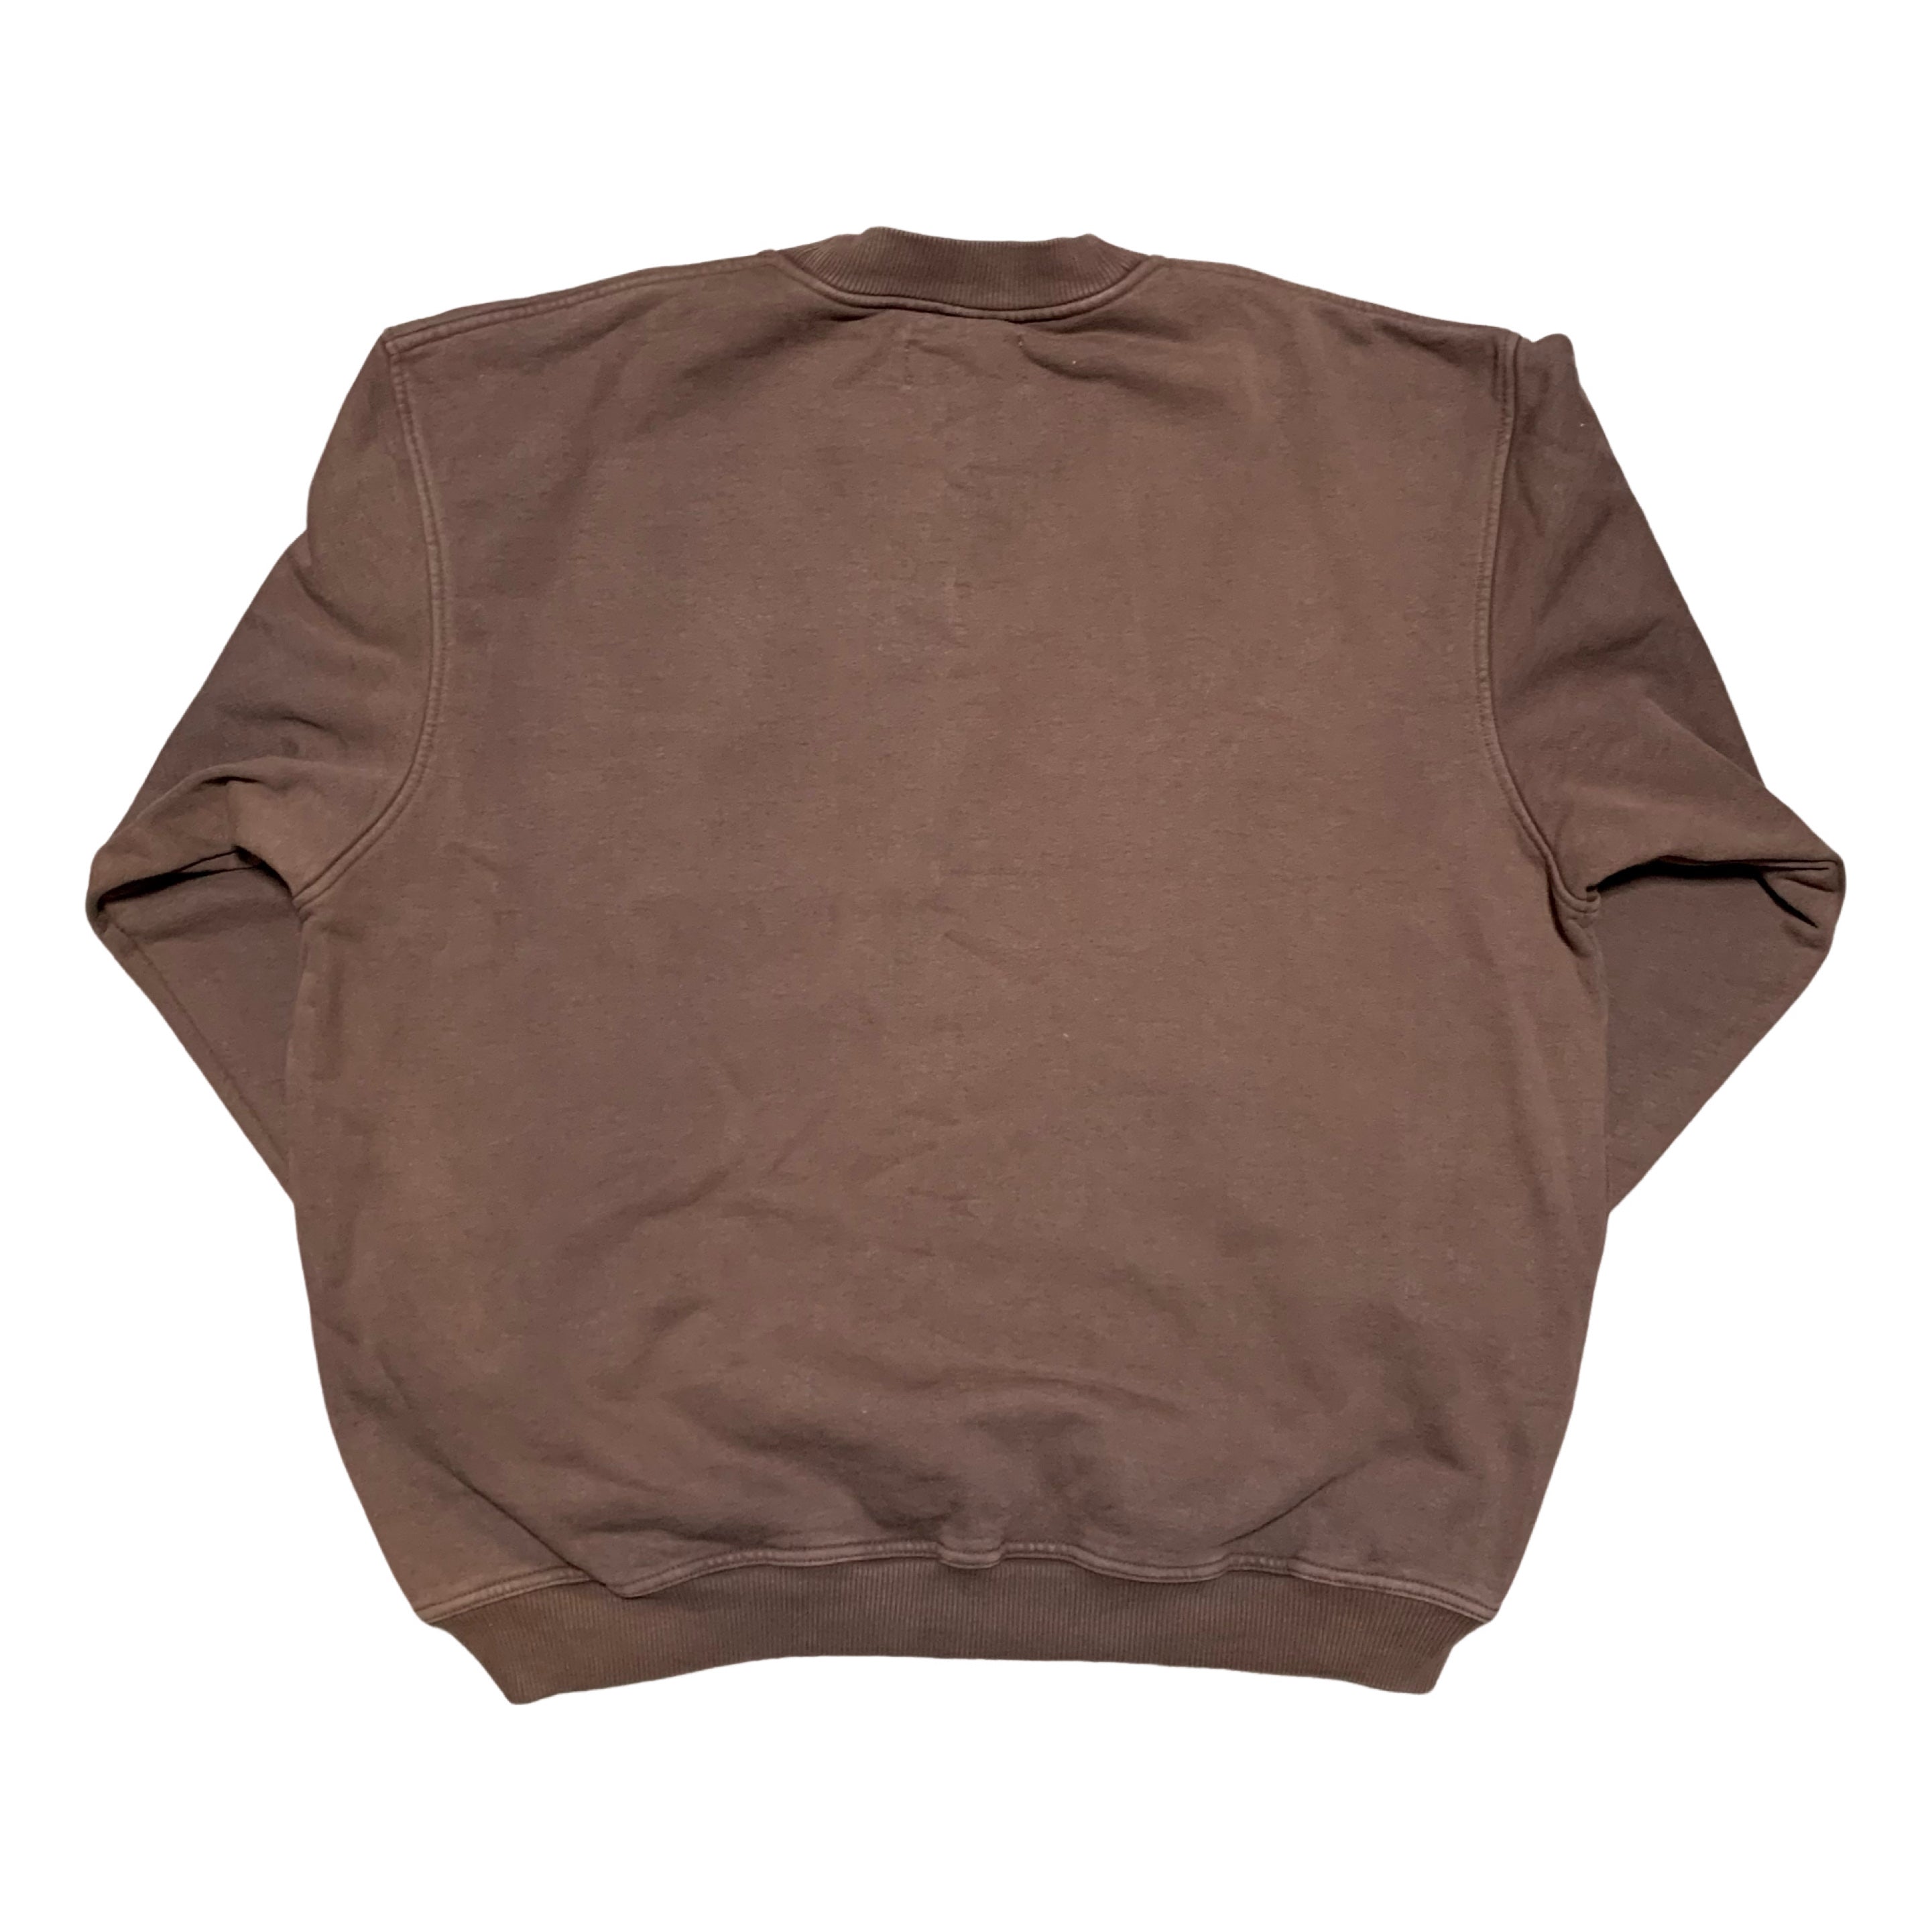 Represent Large Blanks Vintage Brown Sweater Sweatshirt Crewneck